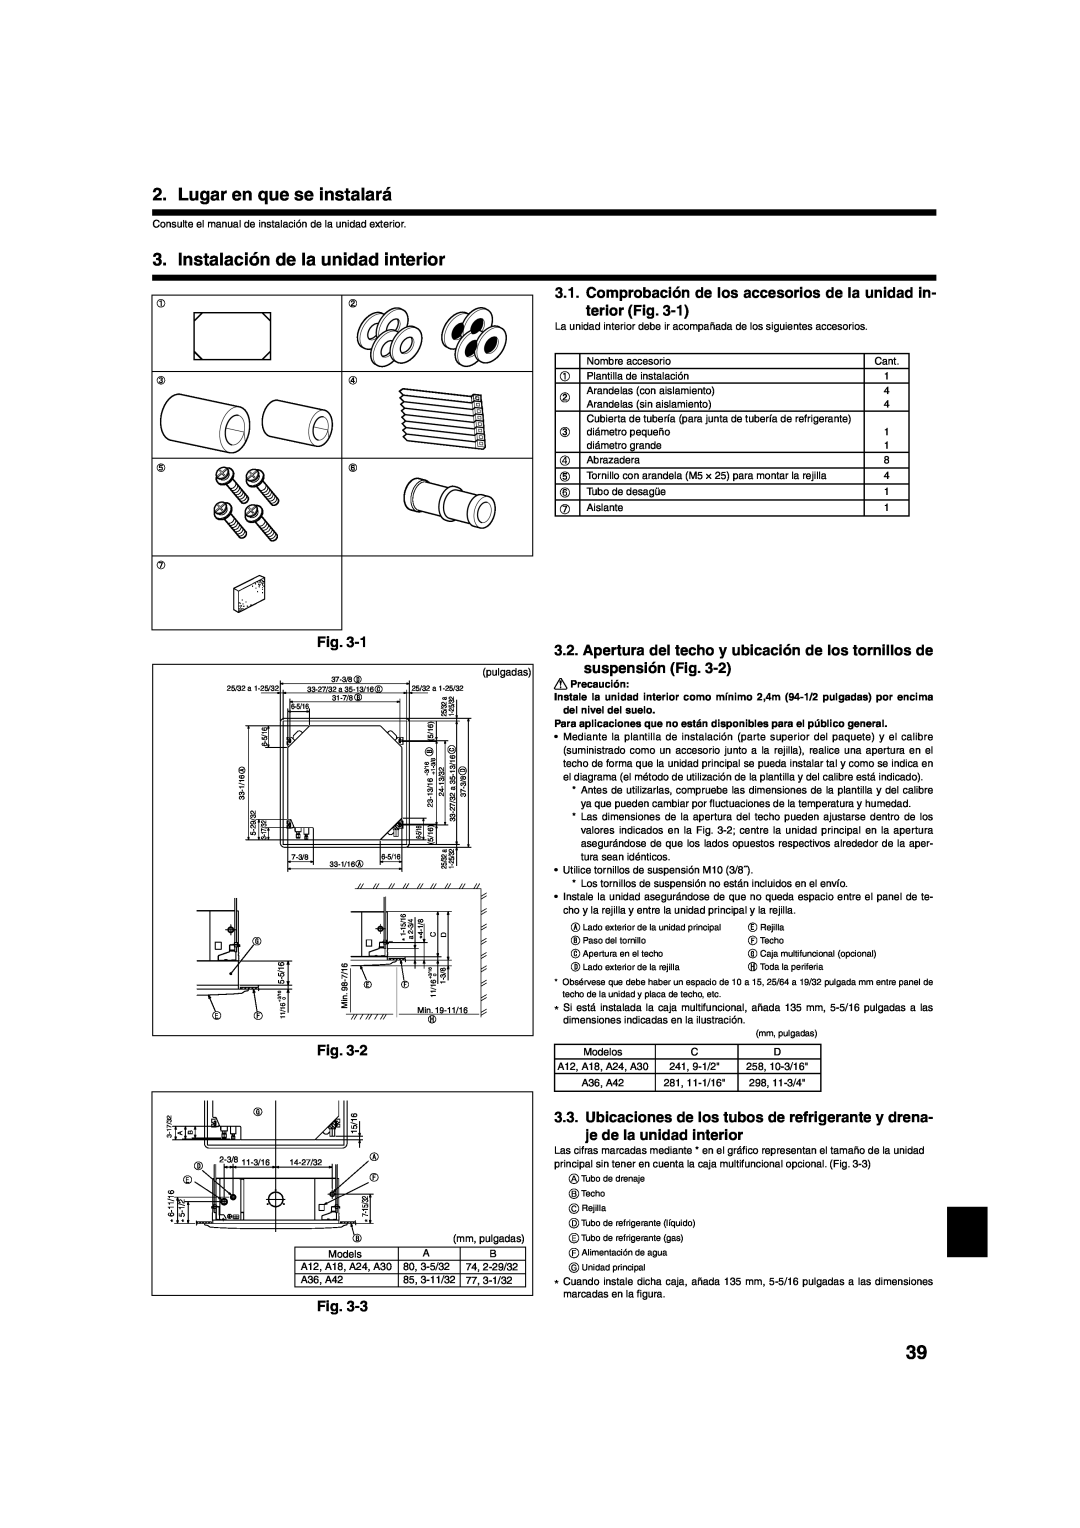 Mitsumi electronic PLA-ABA installation manual Lugar en que se instalará, Instalación de la unidad interior 